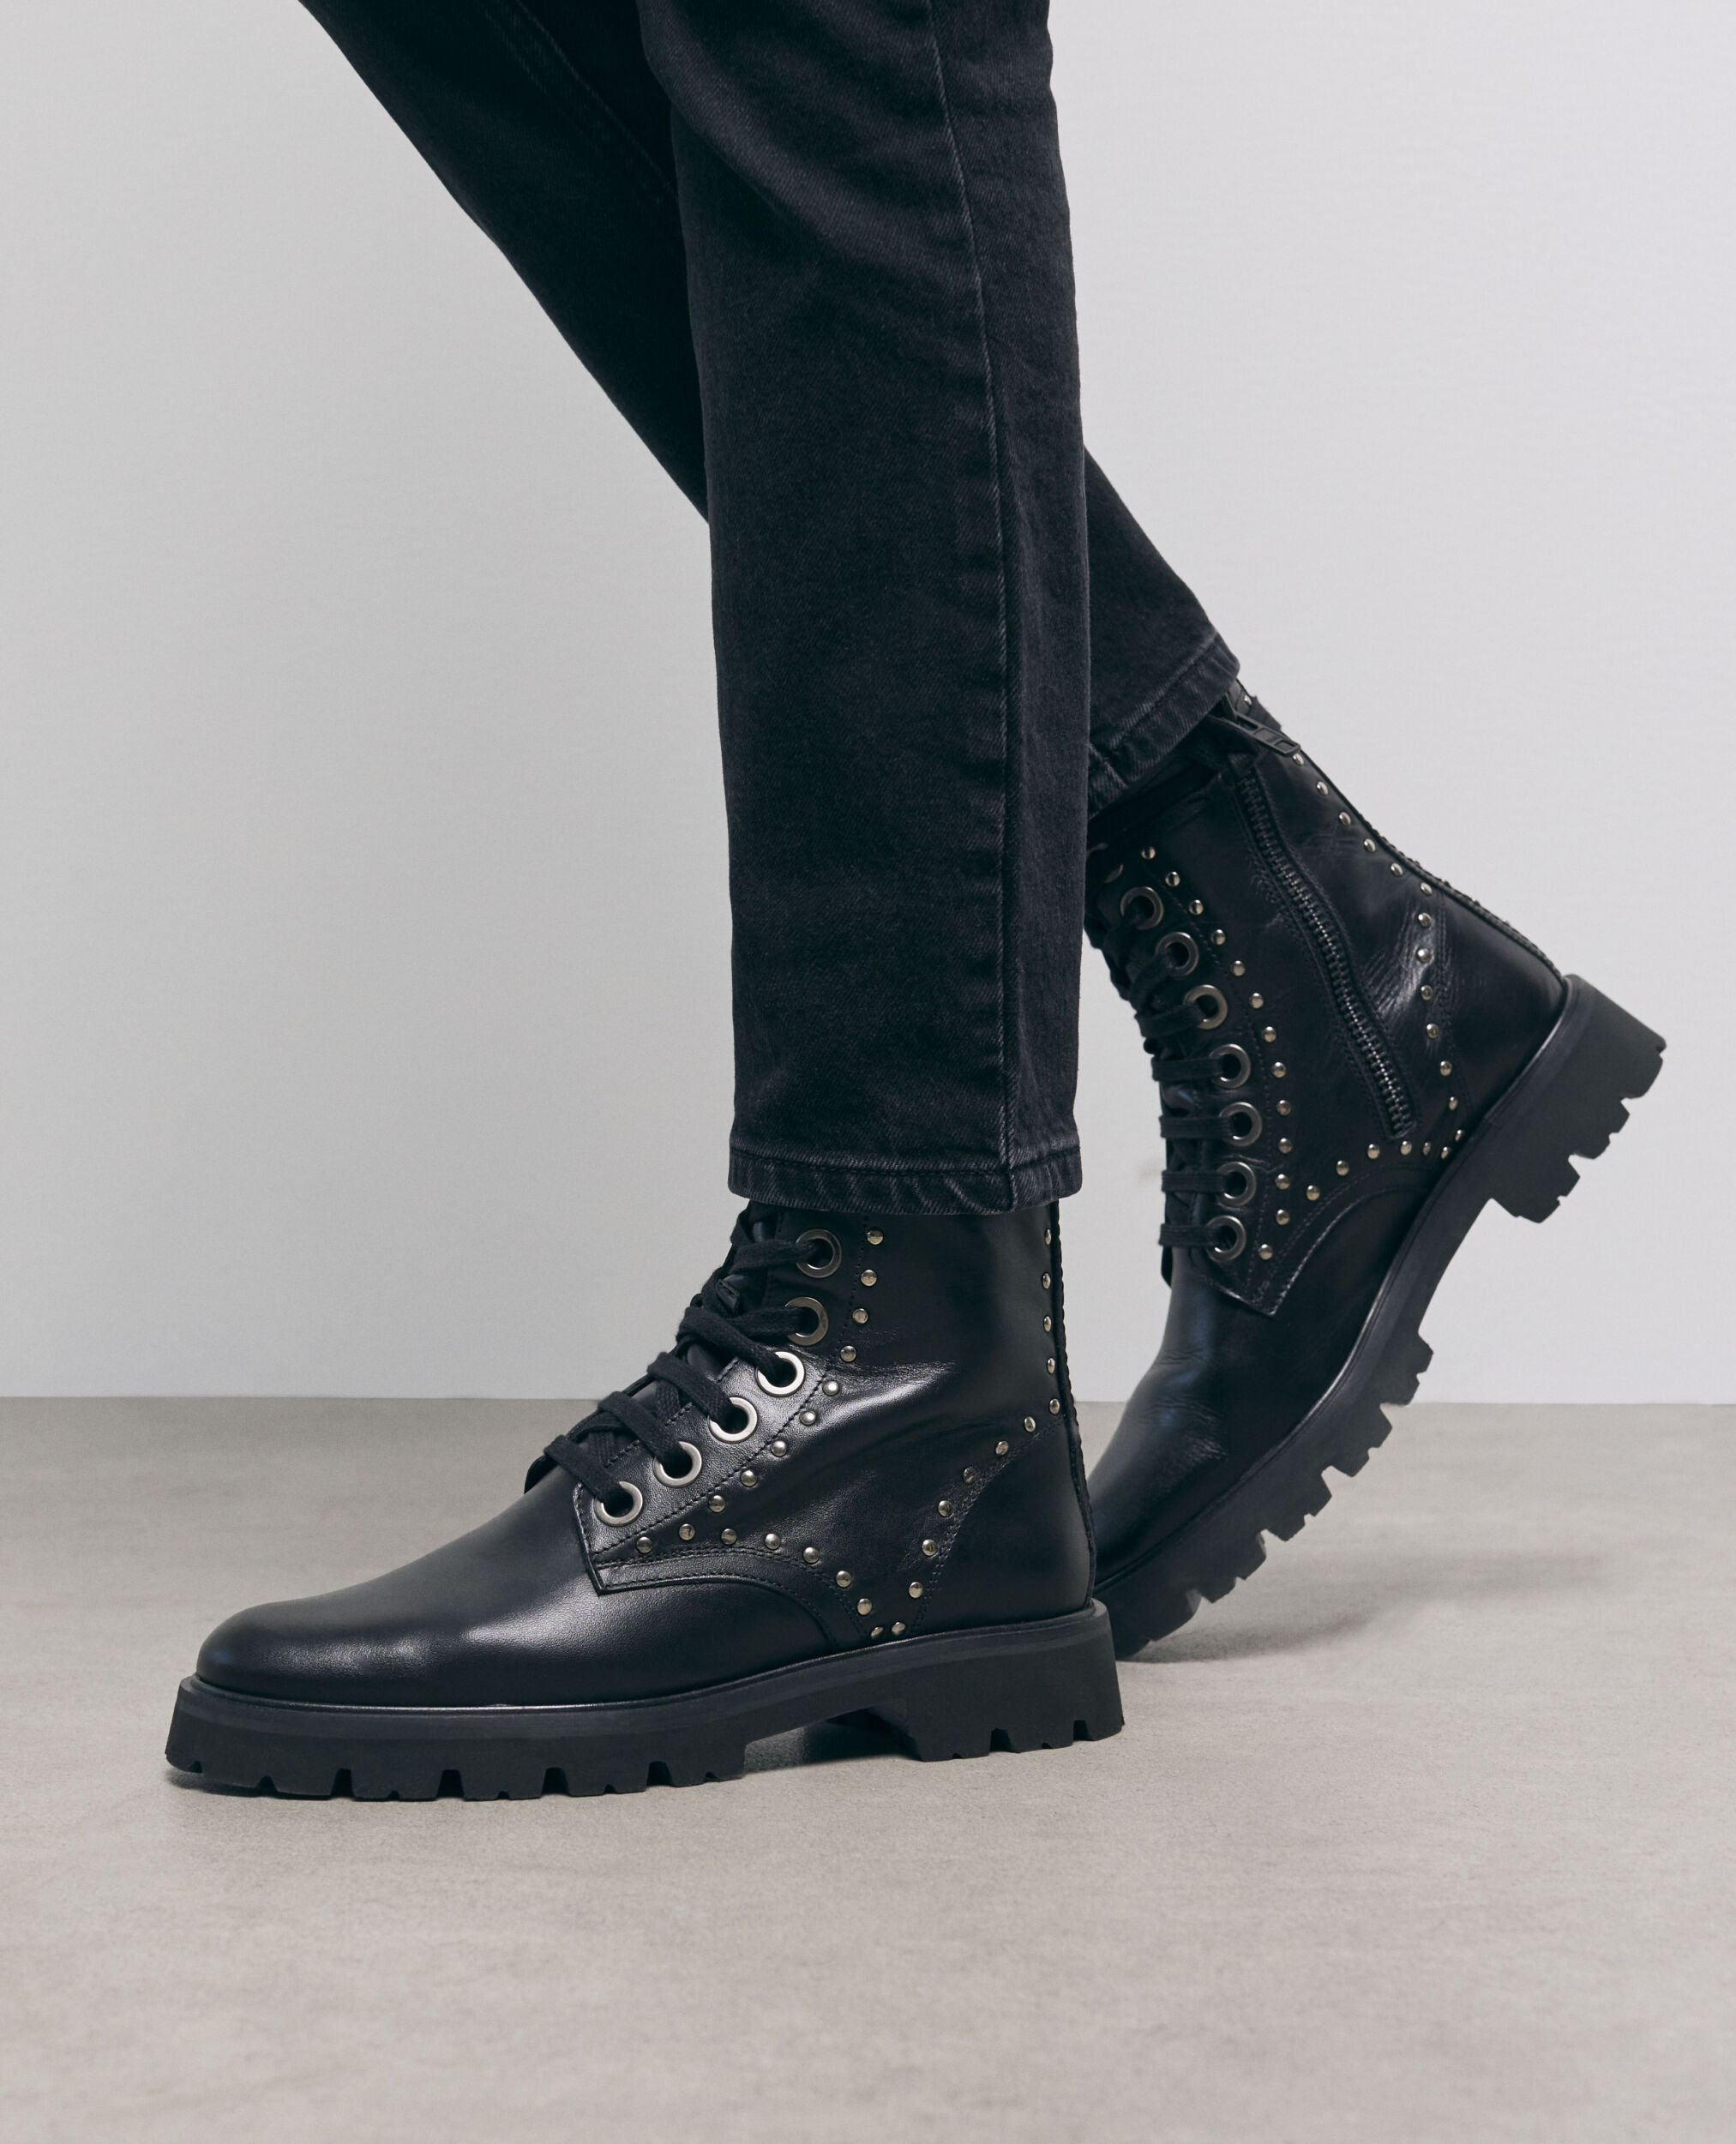 Black leather ranger boots, BLACK, hi-res image number null